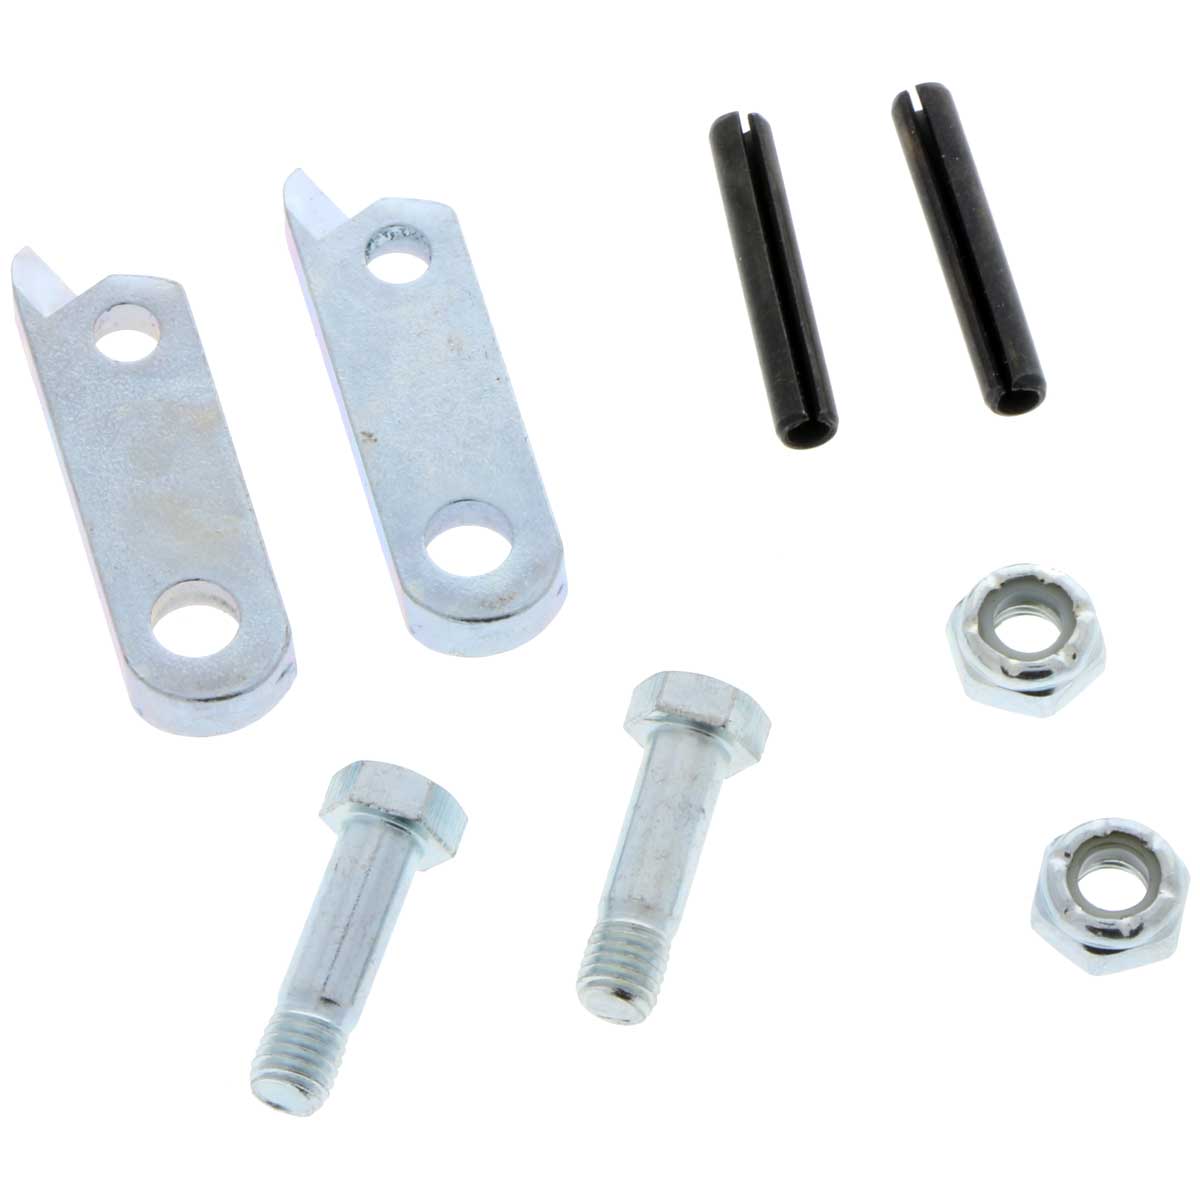 Corner Bead Tool Repair Kit